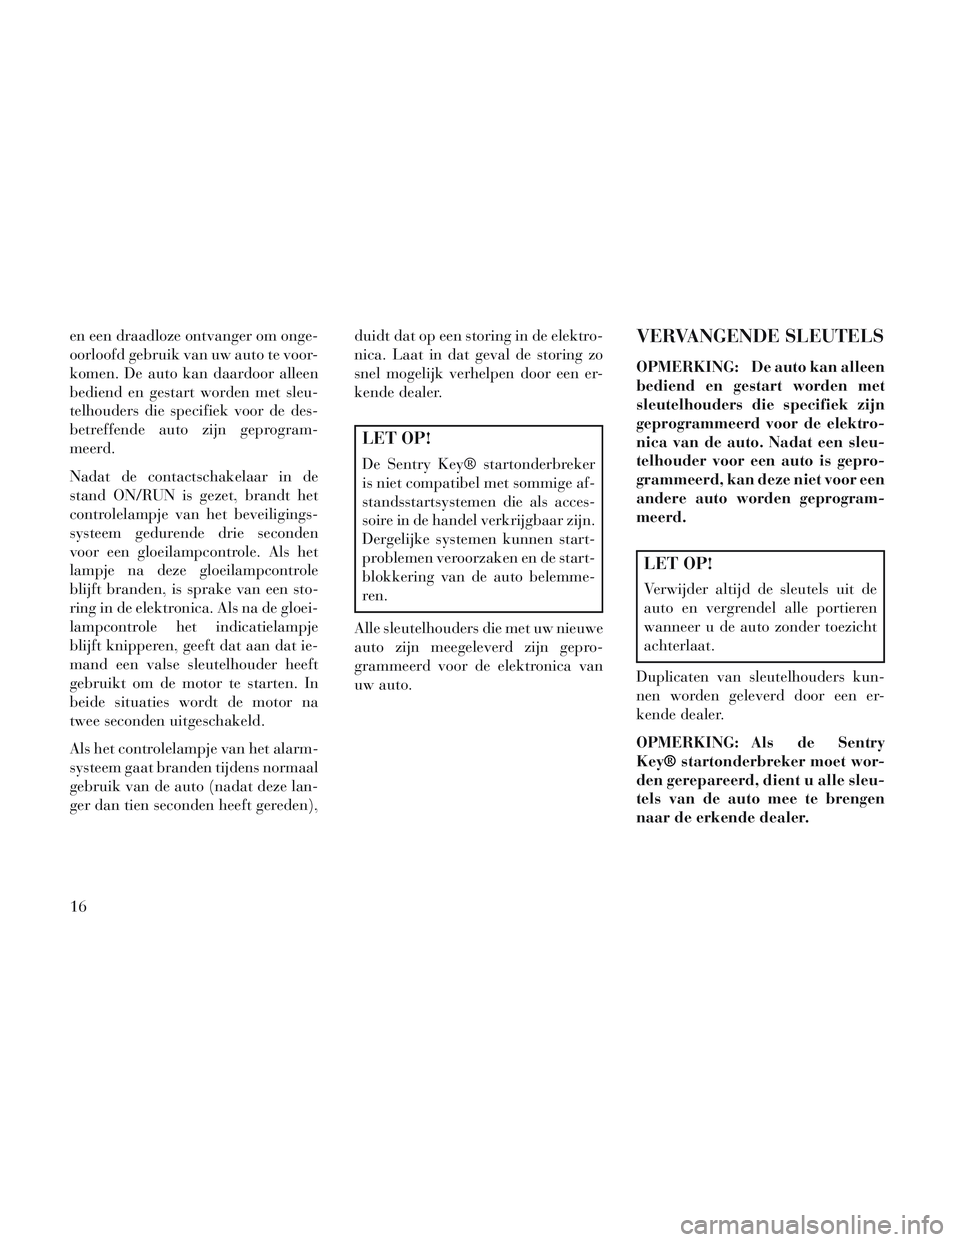 Lancia Voyager 2014  Instructieboek (in Dutch) en een draadloze ontvanger om onge-
oorloofd gebruik van uw auto te voor-
komen. De auto kan daardoor alleen
bediend en gestart worden met sleu-
telhouders die specifiek voor de des-
betreffende auto 